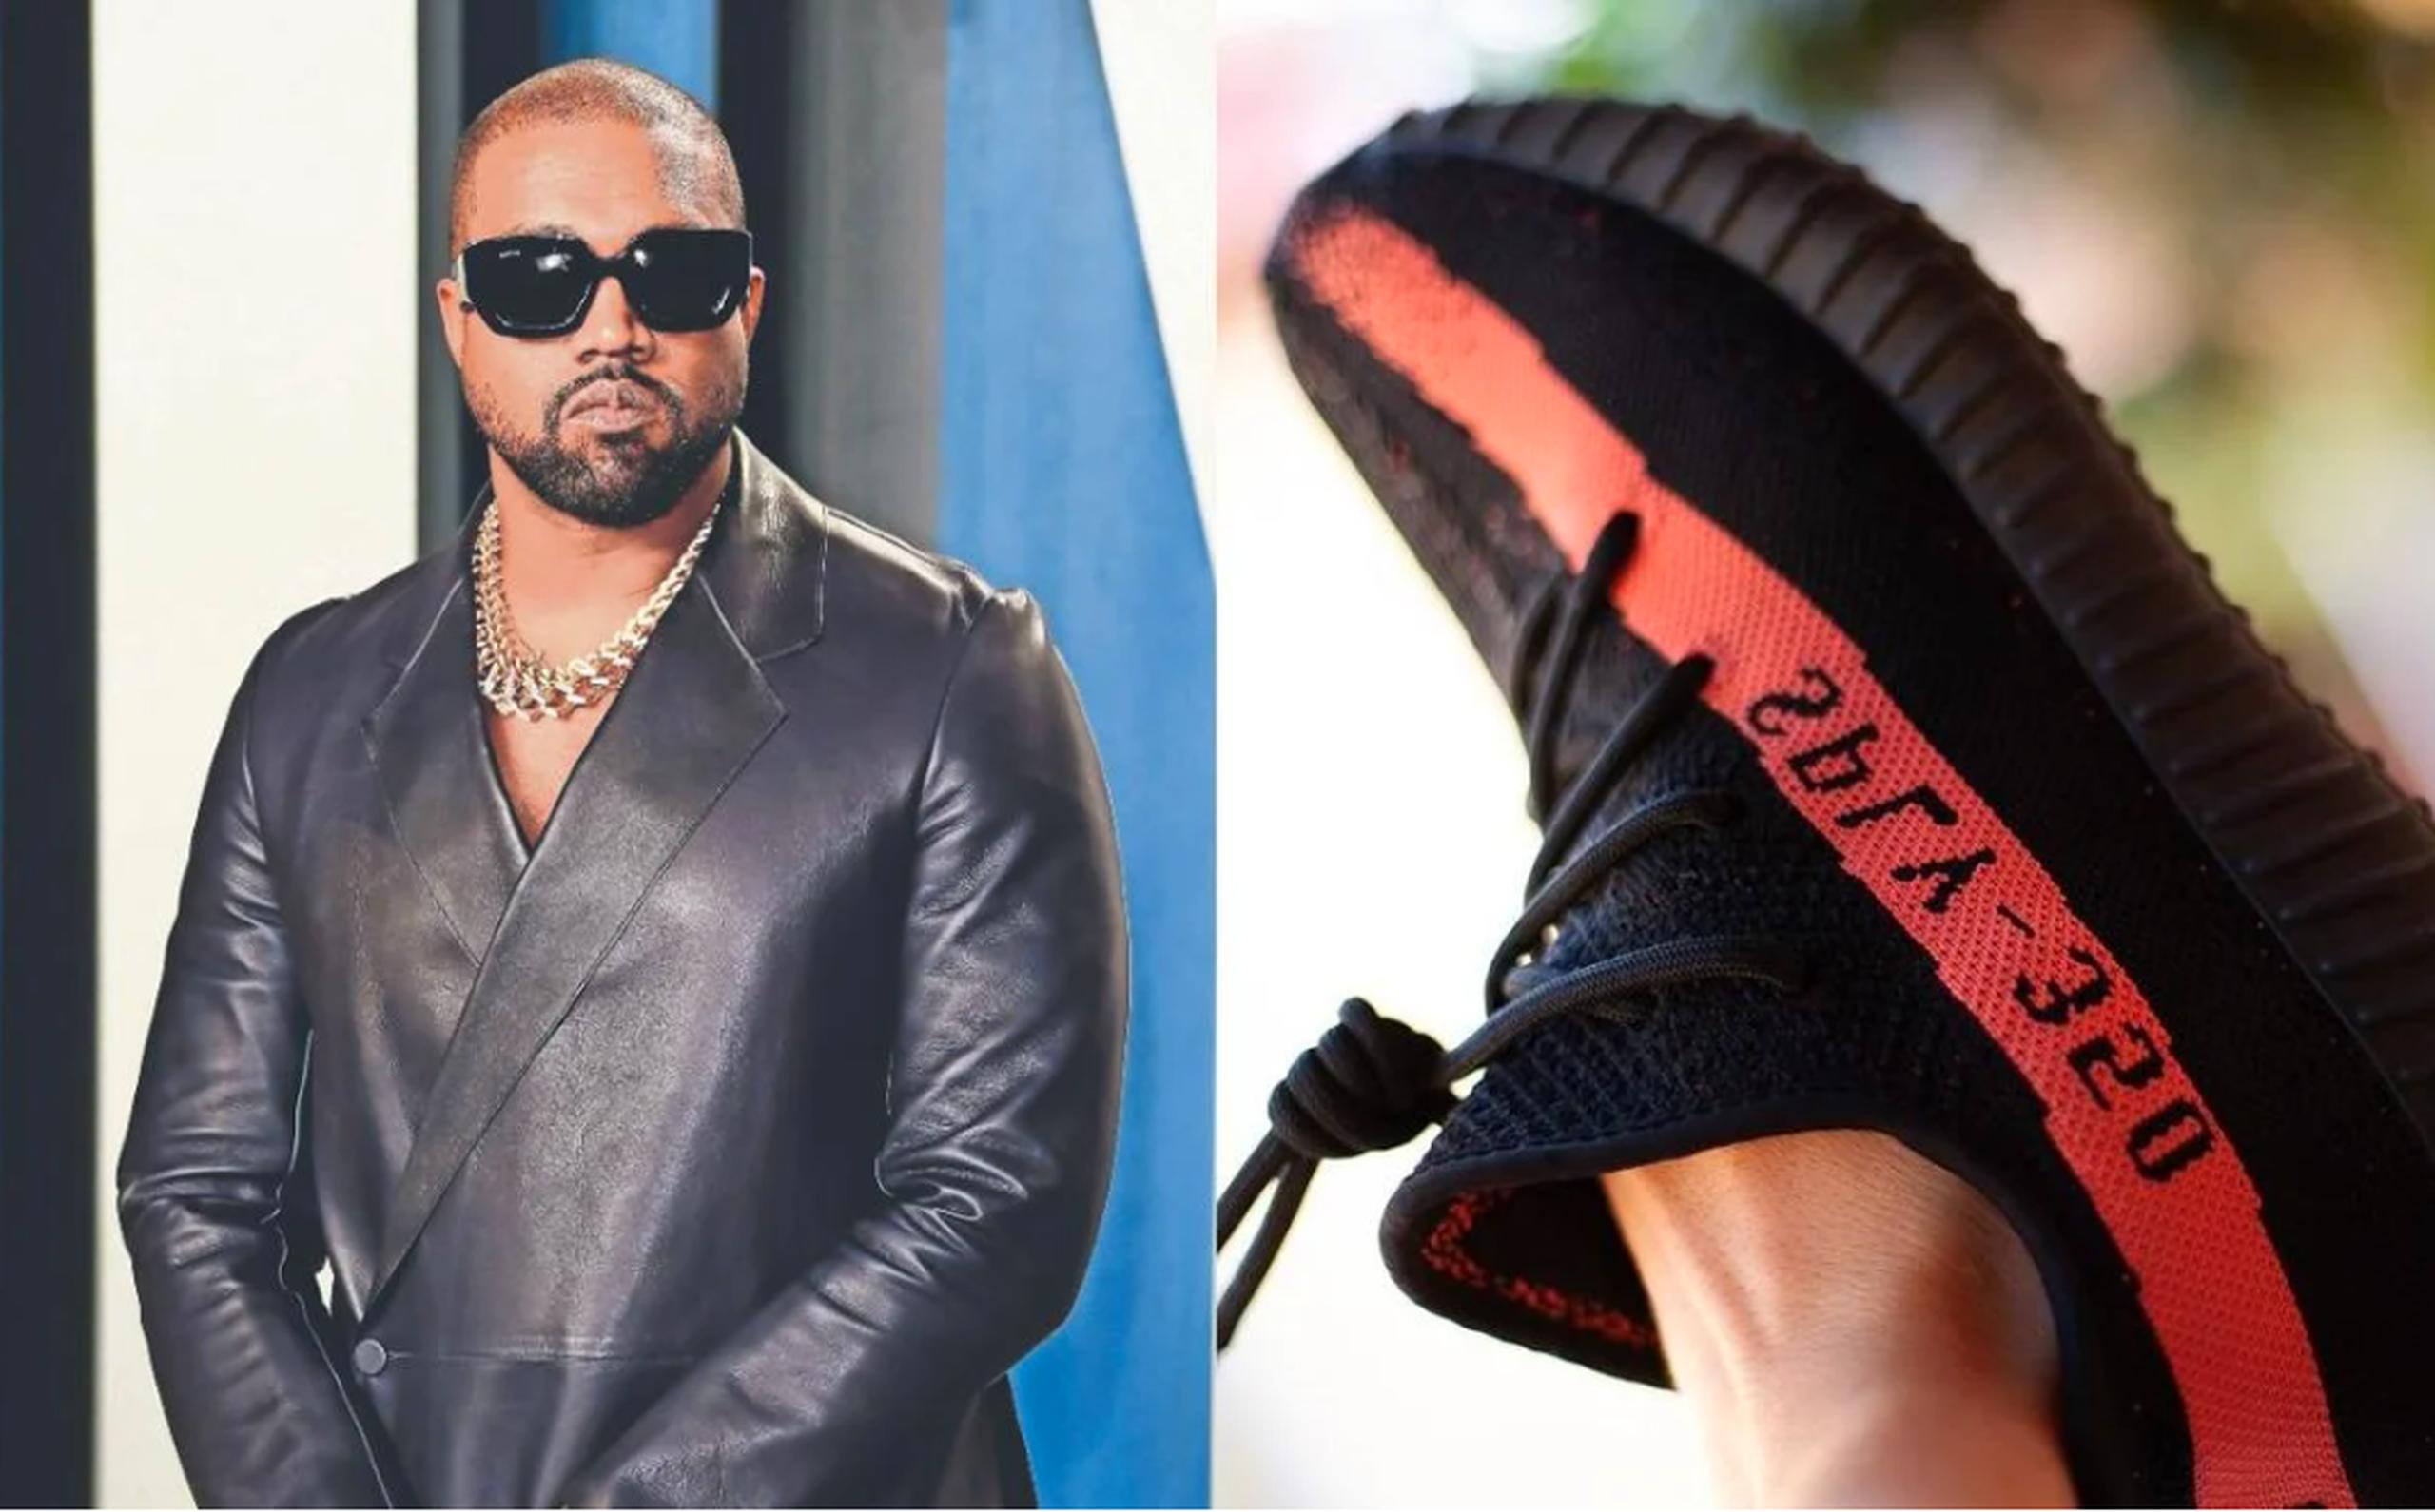 Qué Adidas los tenis Yeezy de Kanye West que vendió? - Primera Hora